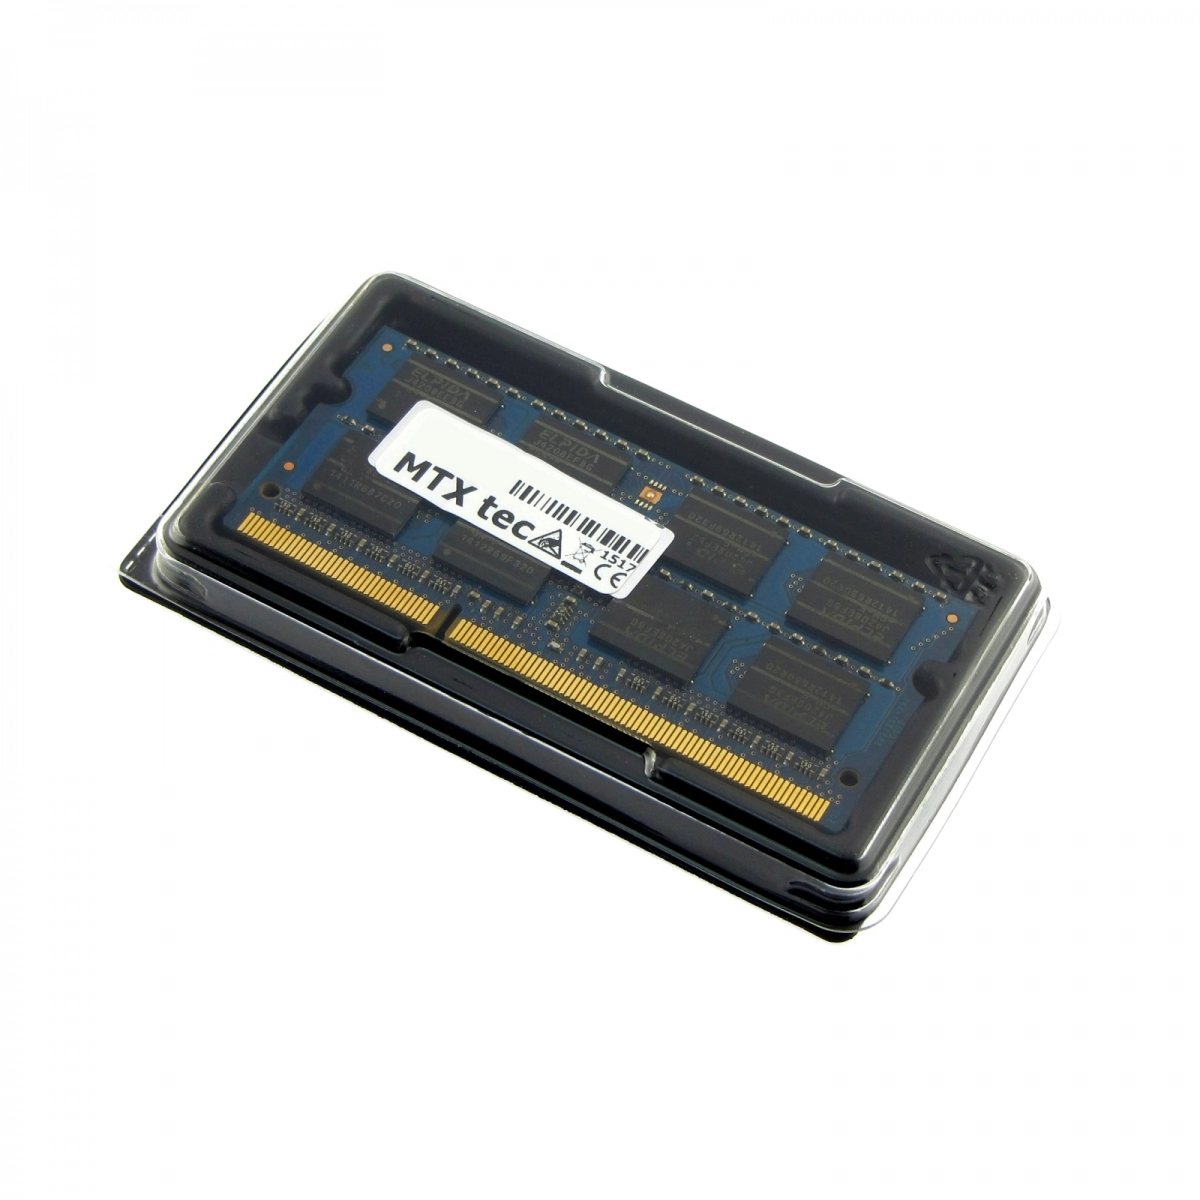 MTXtec Arbeitsspeicher 8 GB RAM für HP ProBook 650 G1